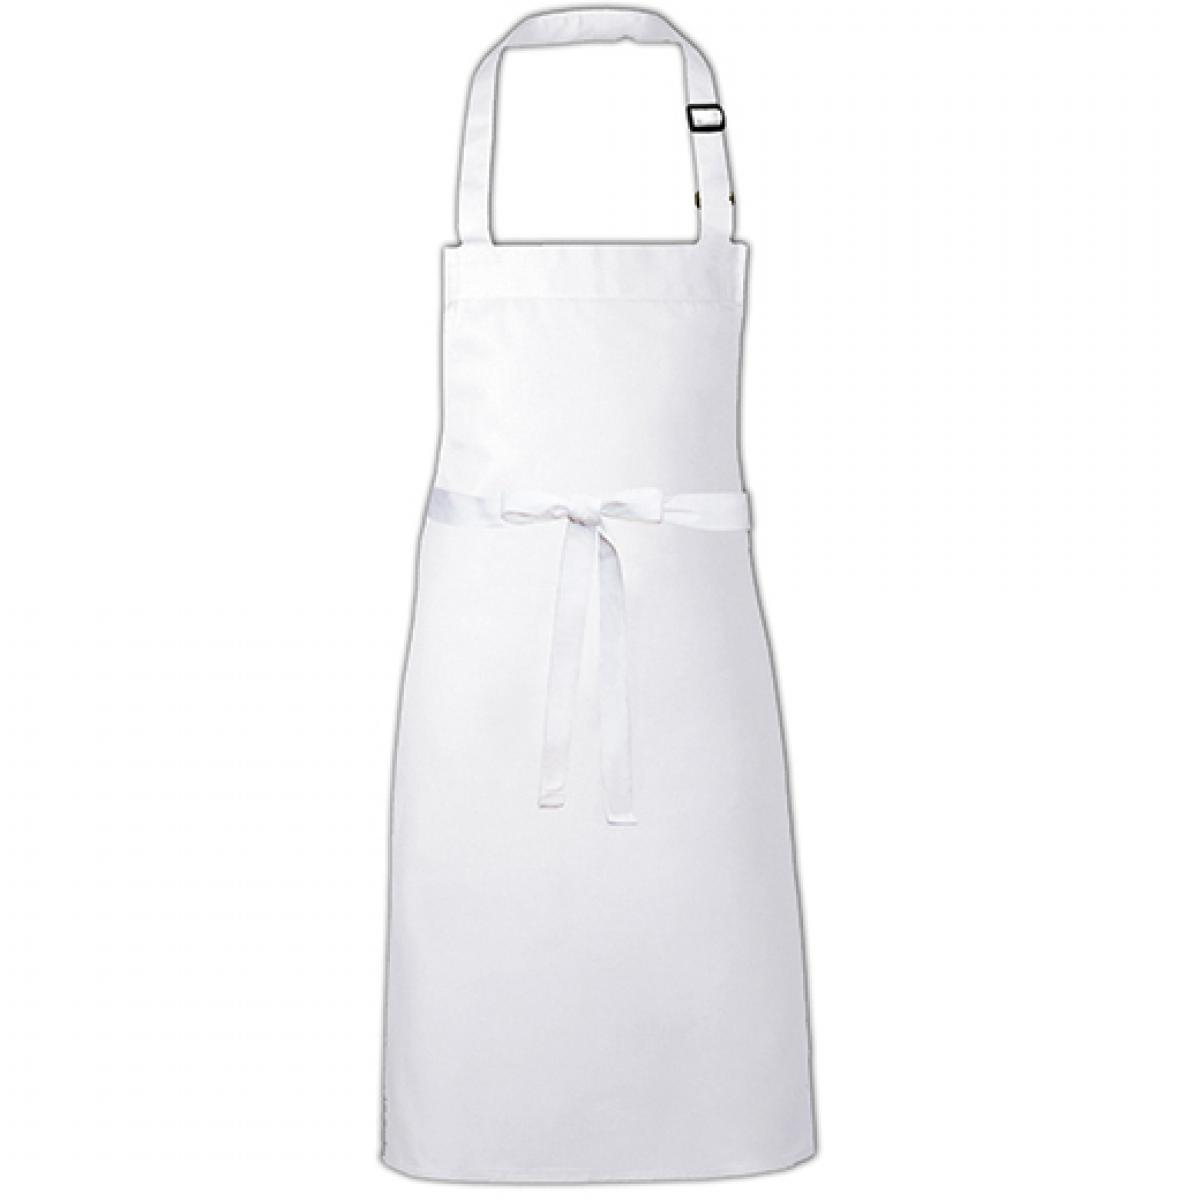 Hersteller: Link Kitchen Wear Herstellernummer: BBQ9073ADJ Artikelbezeichnung: Barbecue Apron adjustable 73 x 90 cm -  Waschbar bis 60 °C Farbe: White